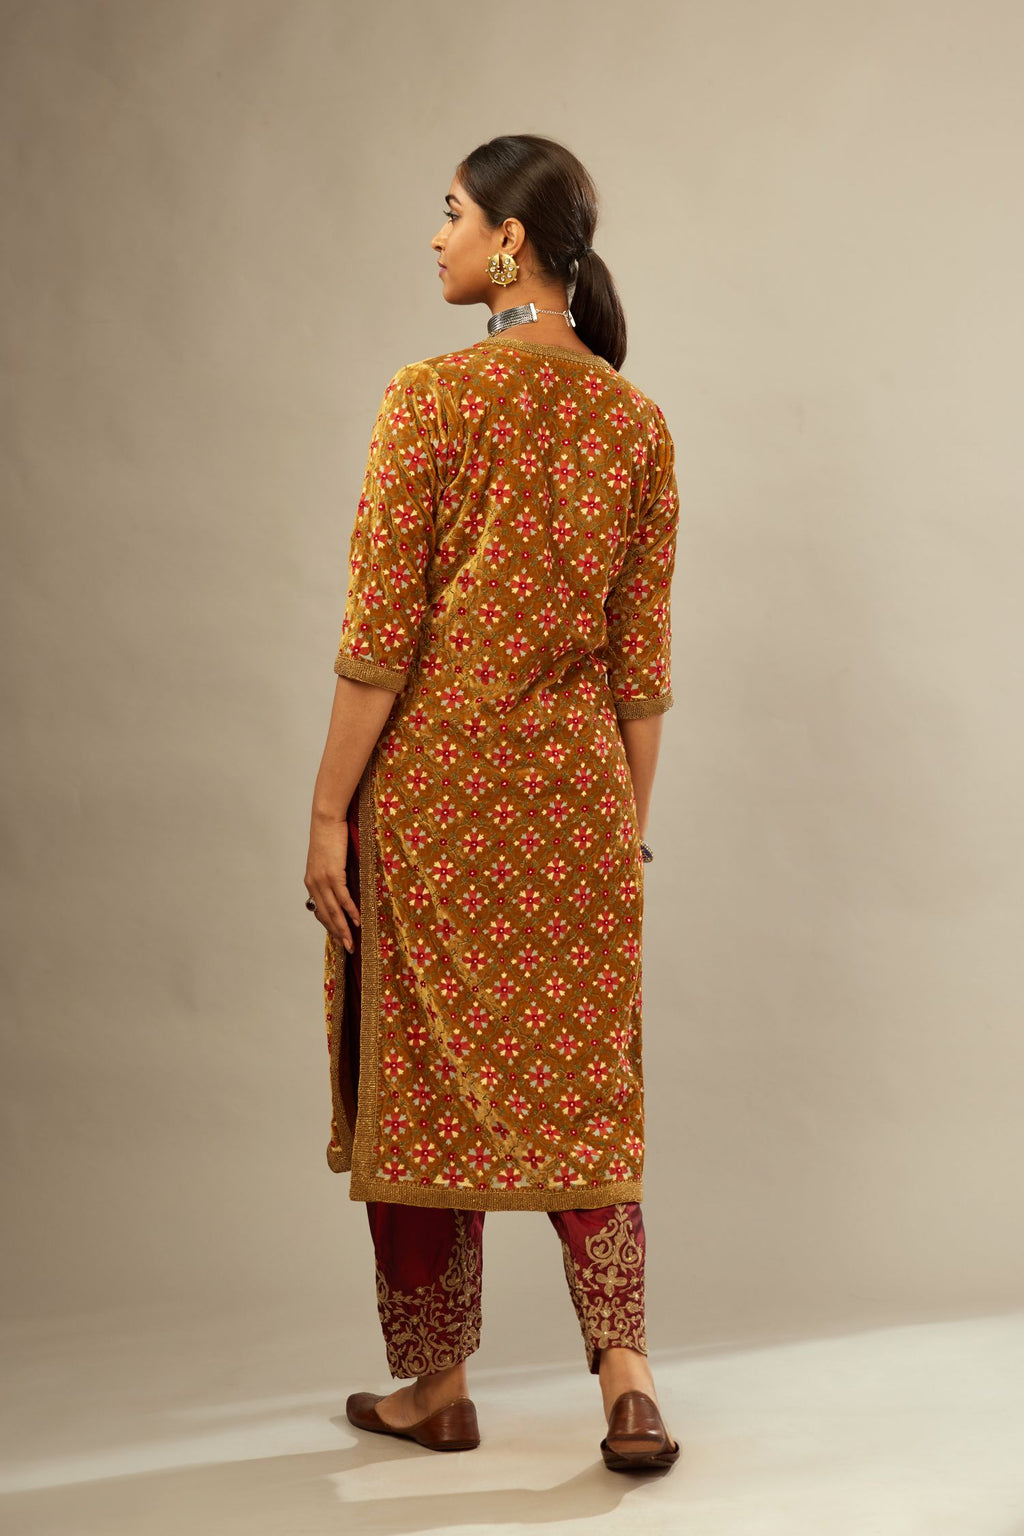 Mustard yellow silk velvet straight kurta set with full jaal silk thread embroidery. This kurta is detailed with zardosi farisha work.